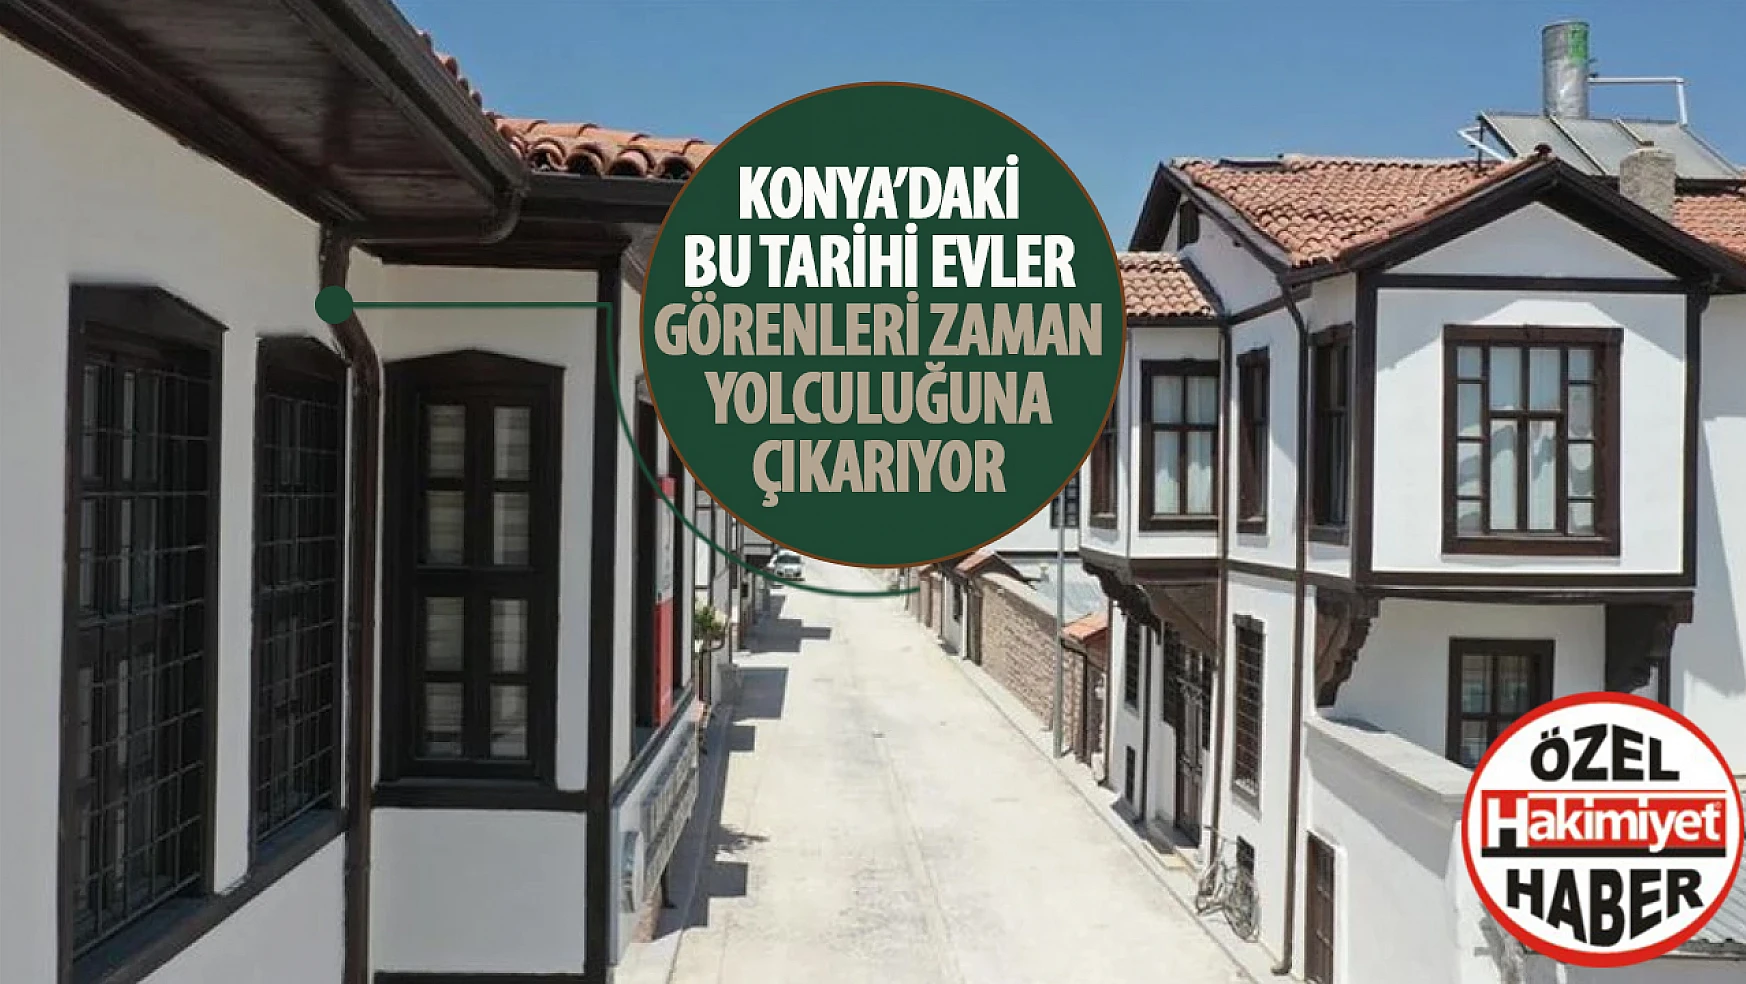 Konya'nın tarihi mirası: geleneksel evler, şehri geçmişe yolculuğa çağırıyor